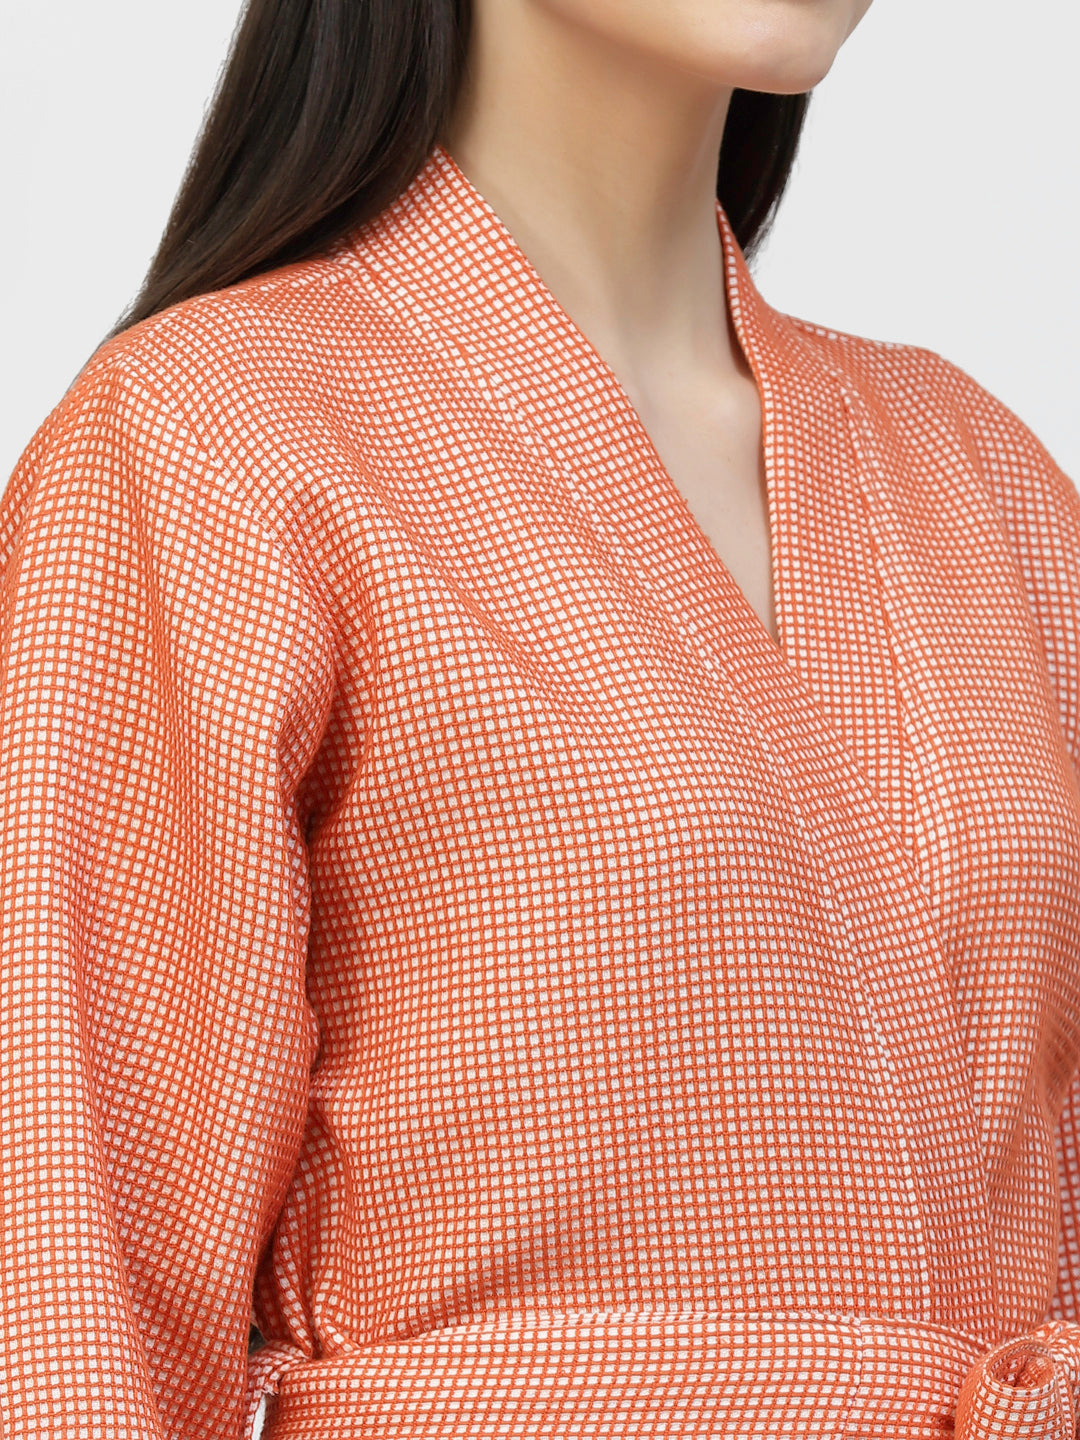 Klotthe Women Orange Checked Cotton Bath Robe With Belt